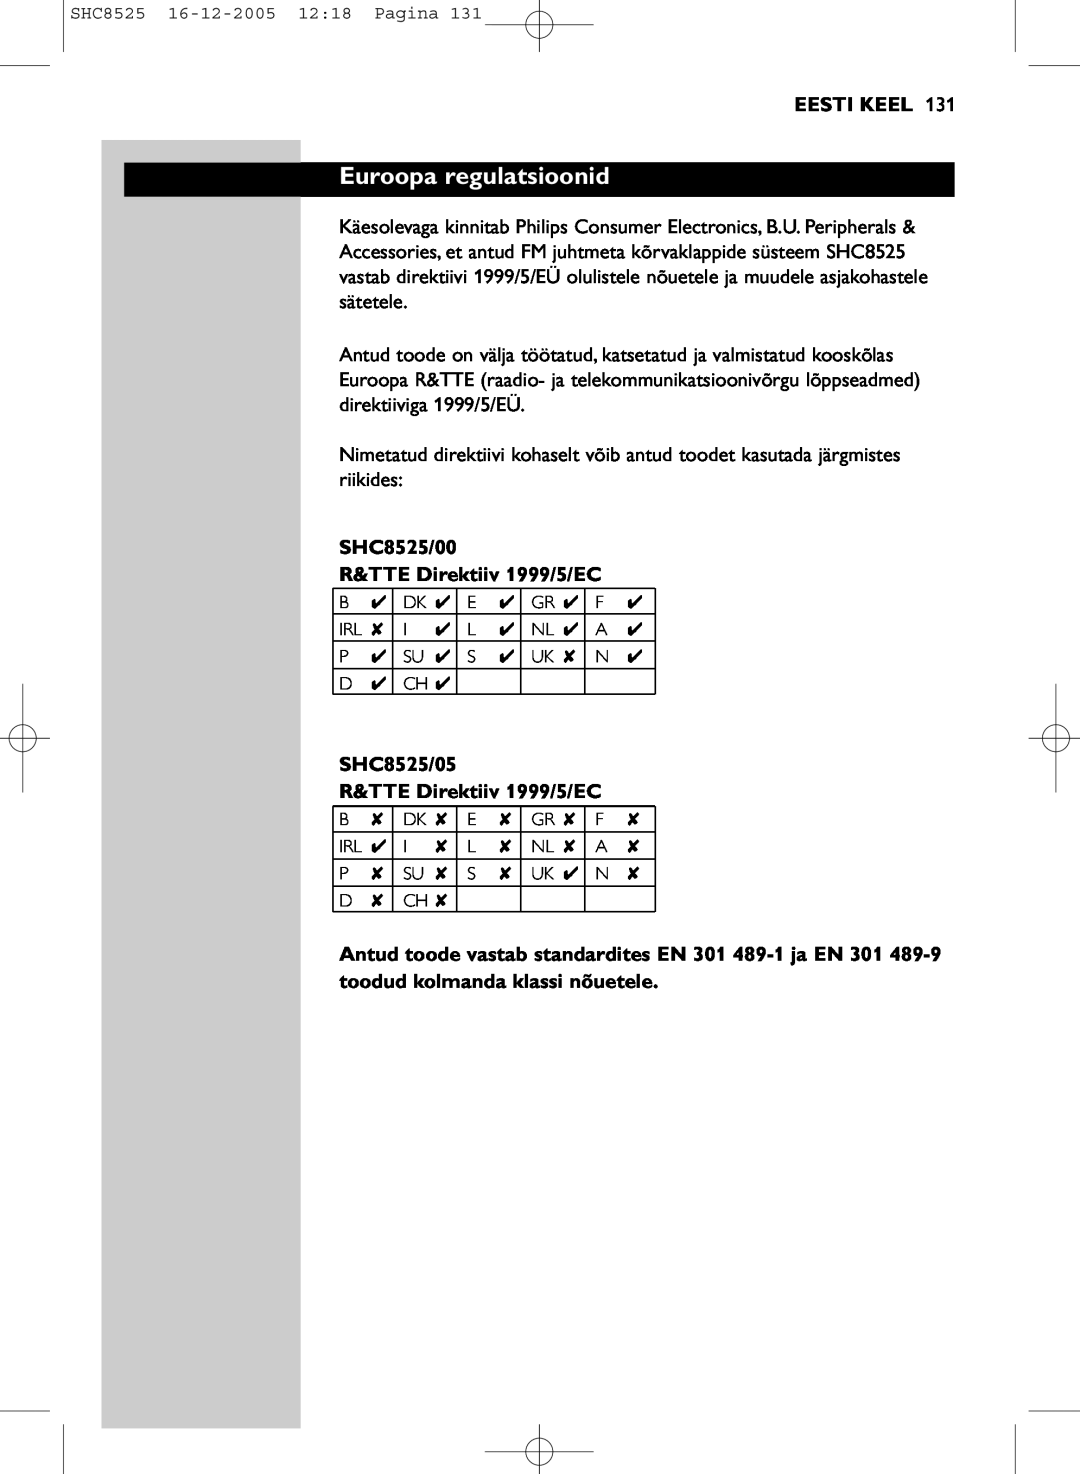 Event electronic manual Euroopa regulatsioonid, Eesti Keel, SHC8525/00 R&TTE Direktiiv 1999/5/EC 